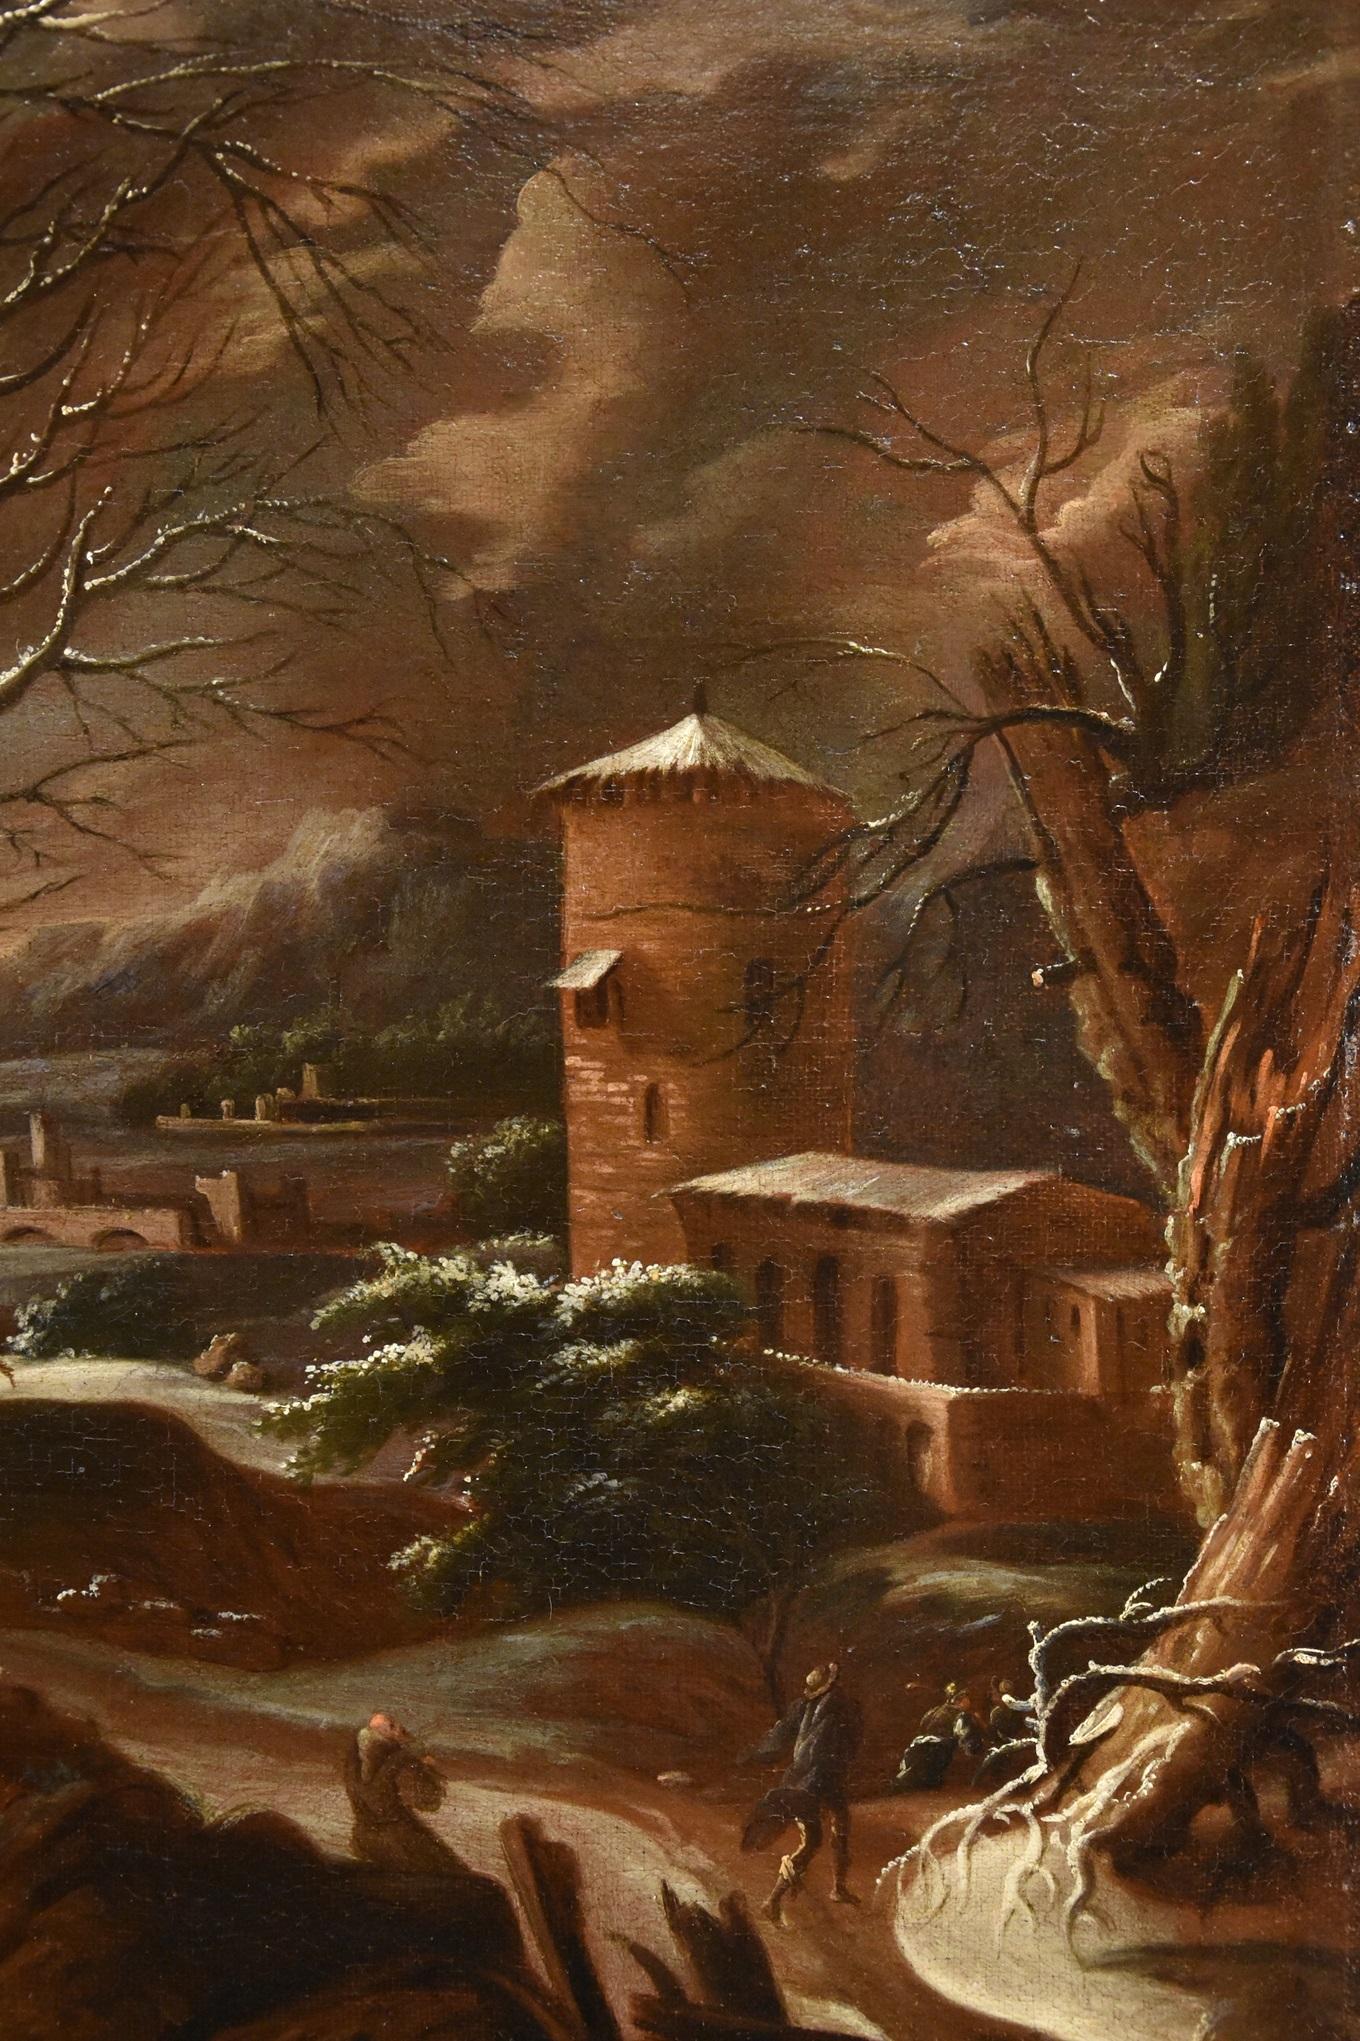 Francesco Foschi (Ancône, 1710 - Rome, 1780) Attribuable
Paysage d'hiver

Huile sur toile
76 x 63 cm. - Dans un cadre 87 x 75 cm.

Les éléments de composition et de style de cet agréable paysage enneigé nous permettent d'en attribuer la paternité au